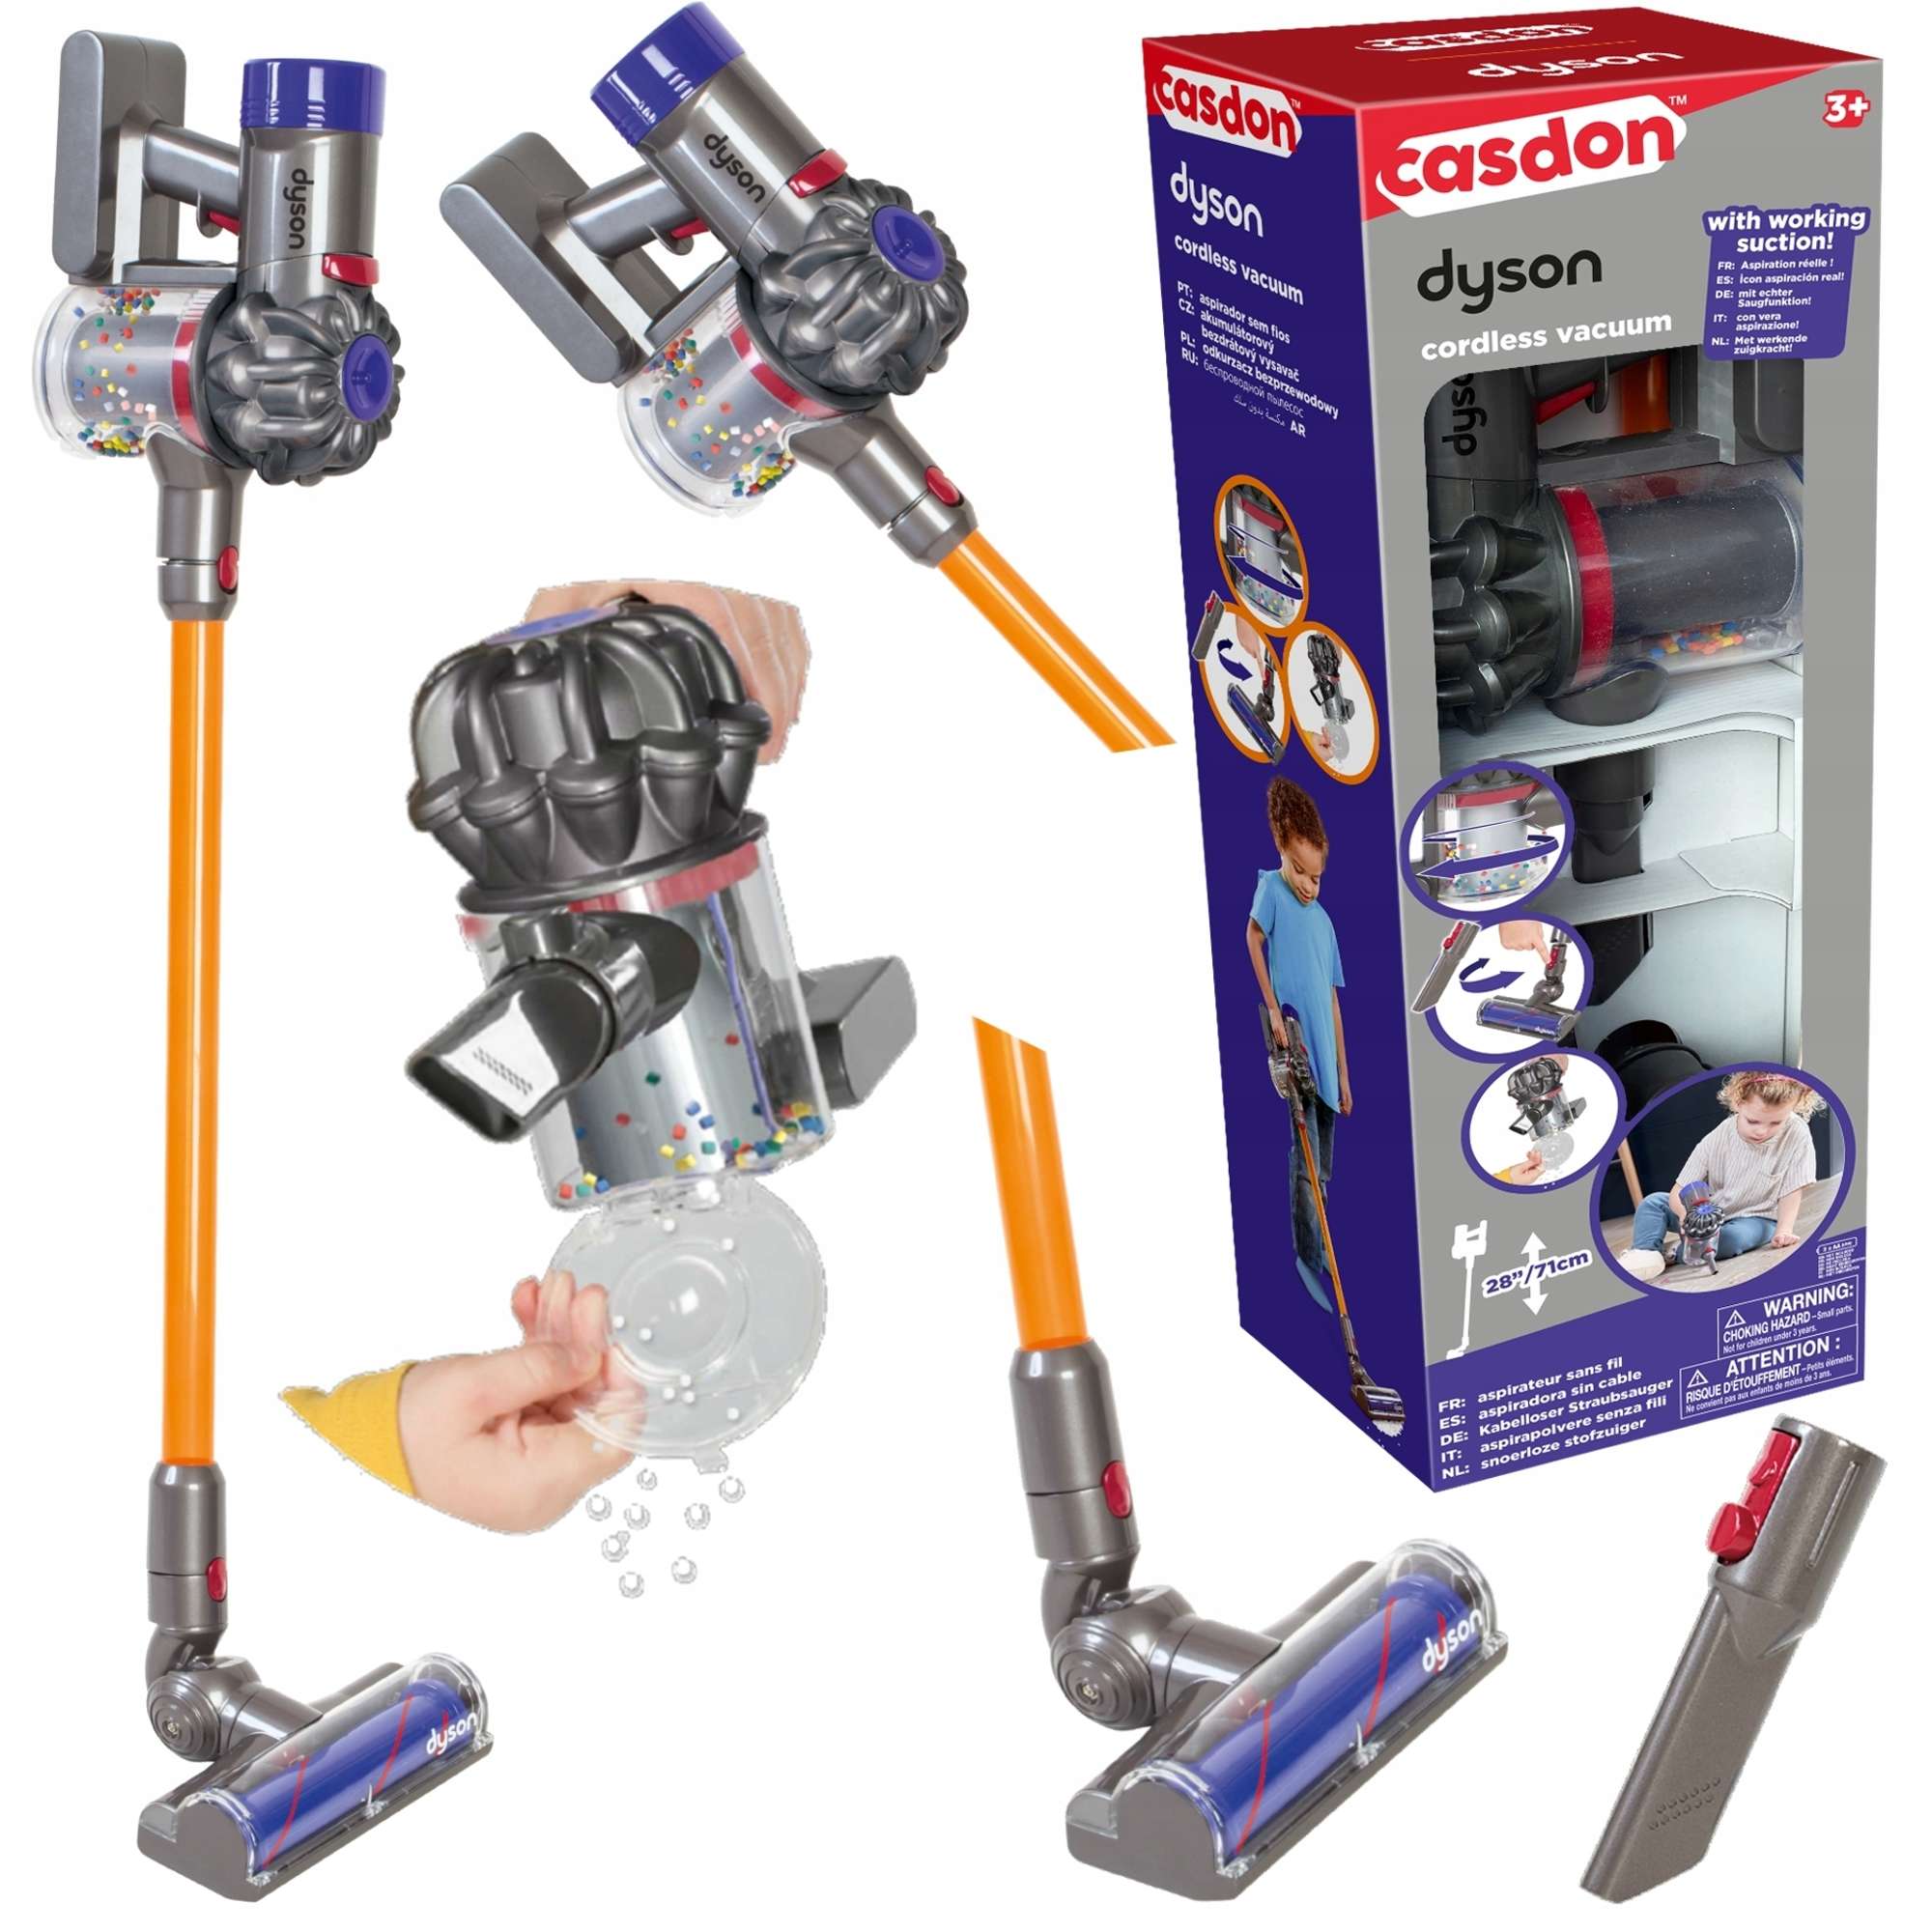 Casdon Dyson interaktive Vakuum Spielzeug Staubsaug für Kinder Upright  Cordless